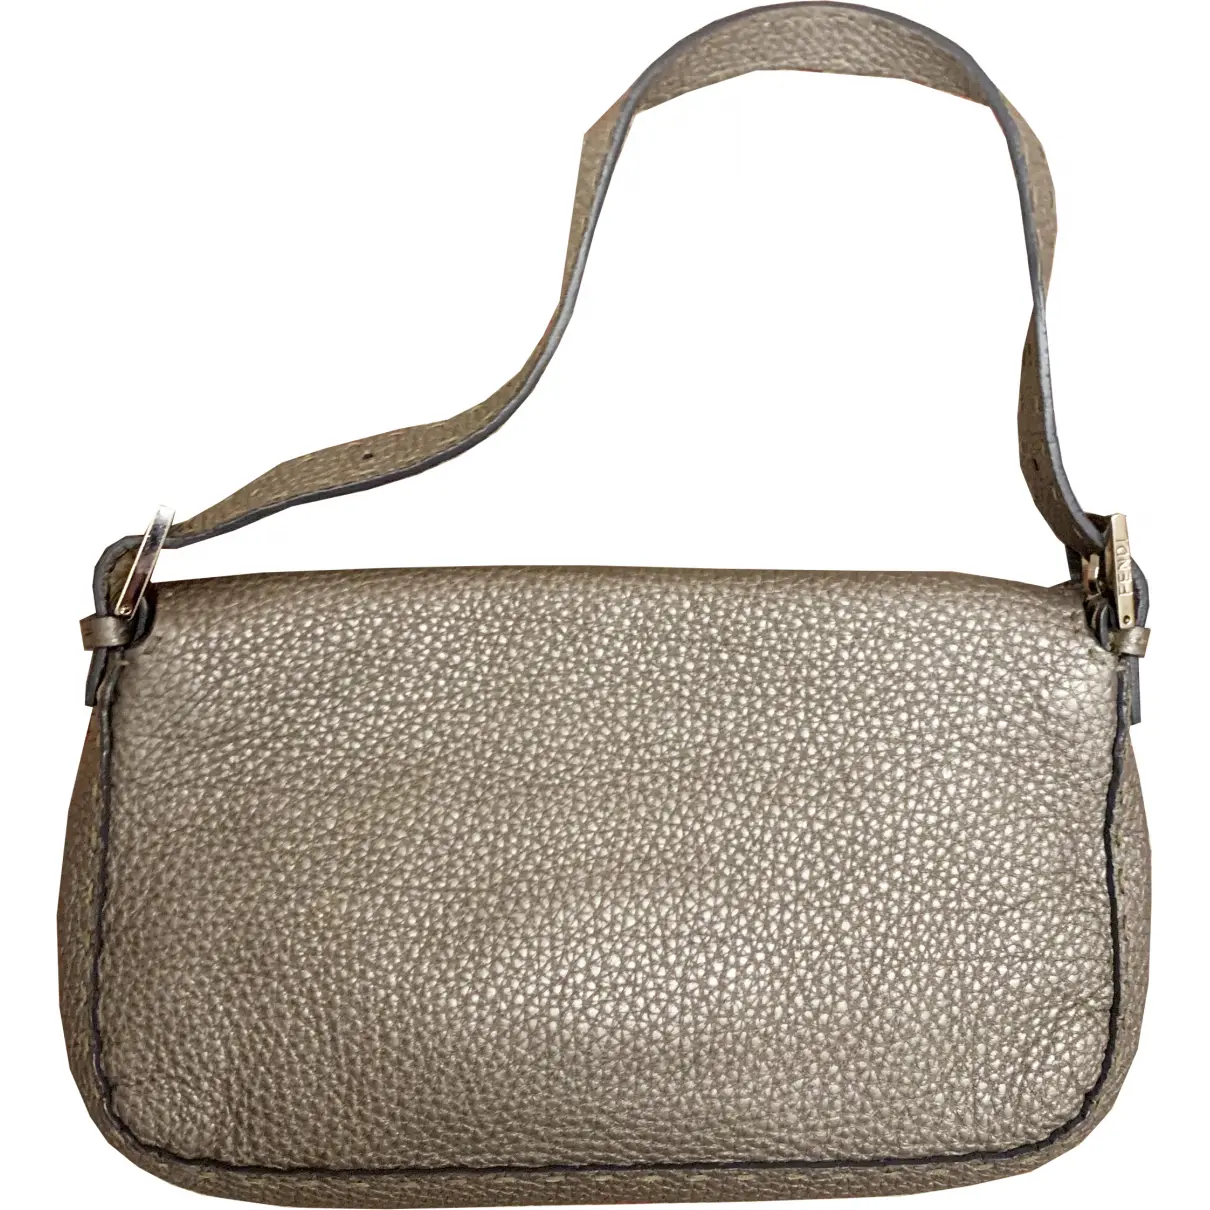 Buy Fendi Baguette leather handbag online - Vintage